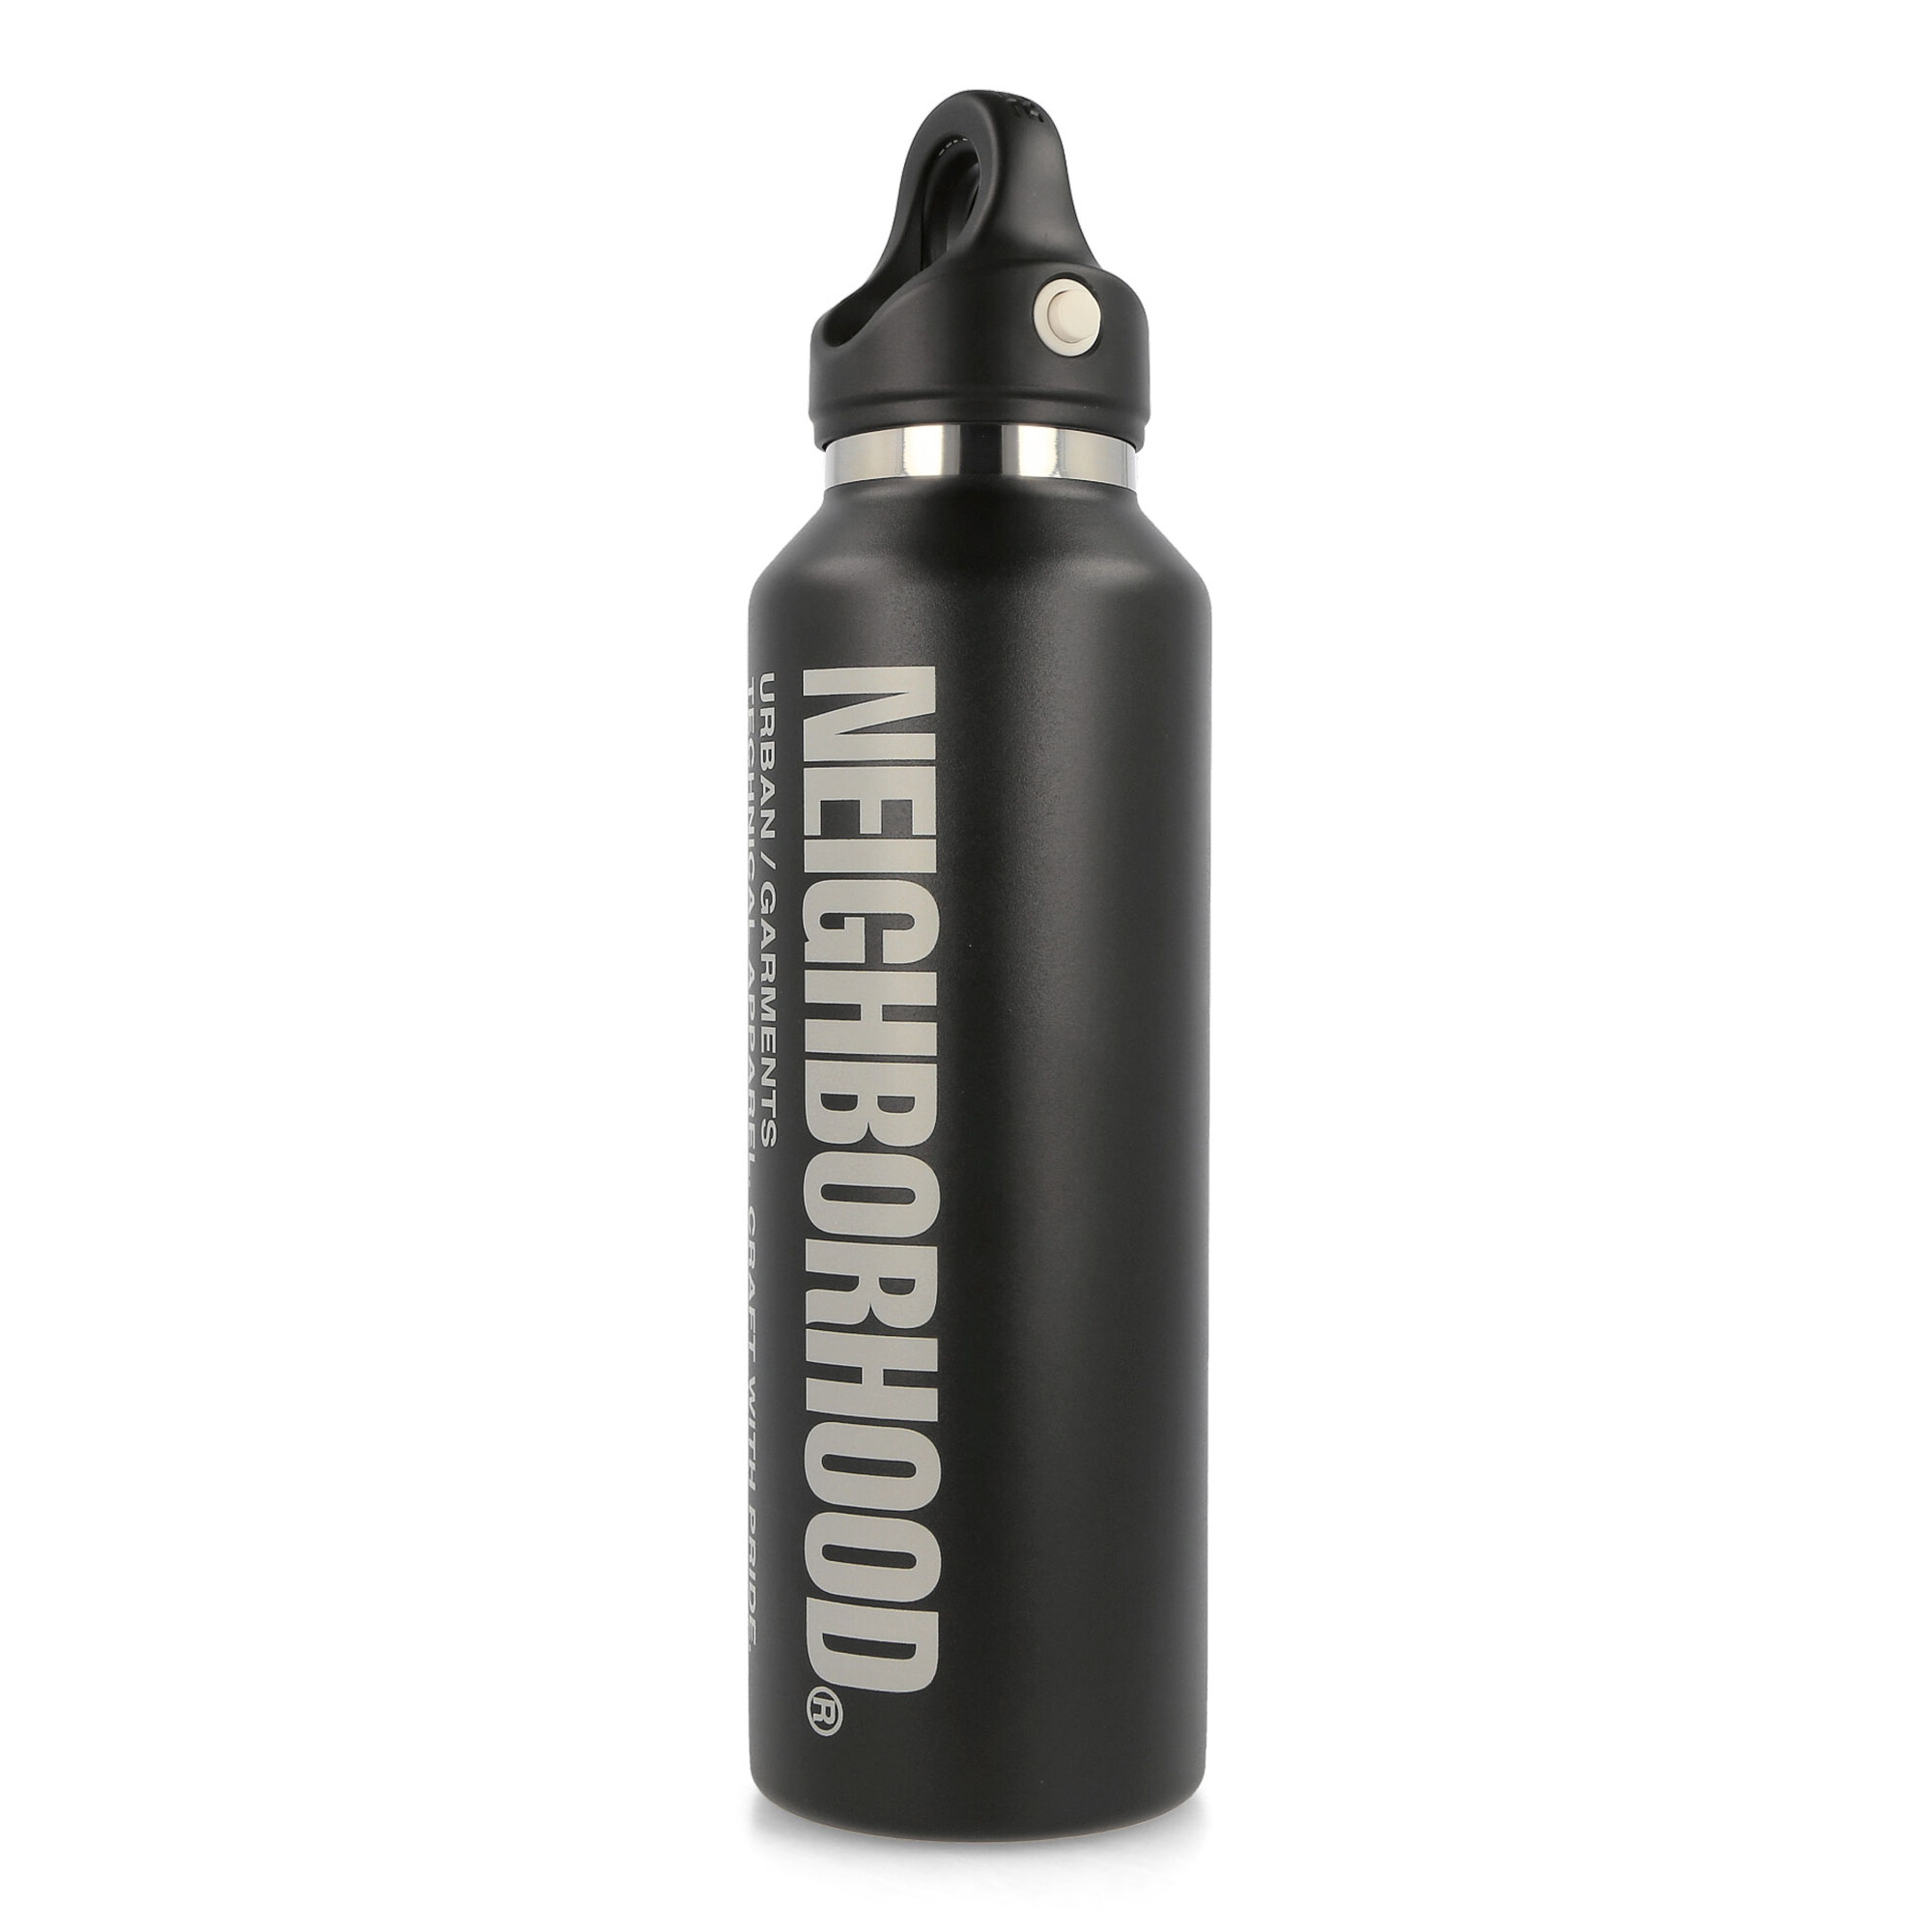 Neighborhood - REVOMAX X Neighborhood Vacuum Insulated Bottle 20OZ